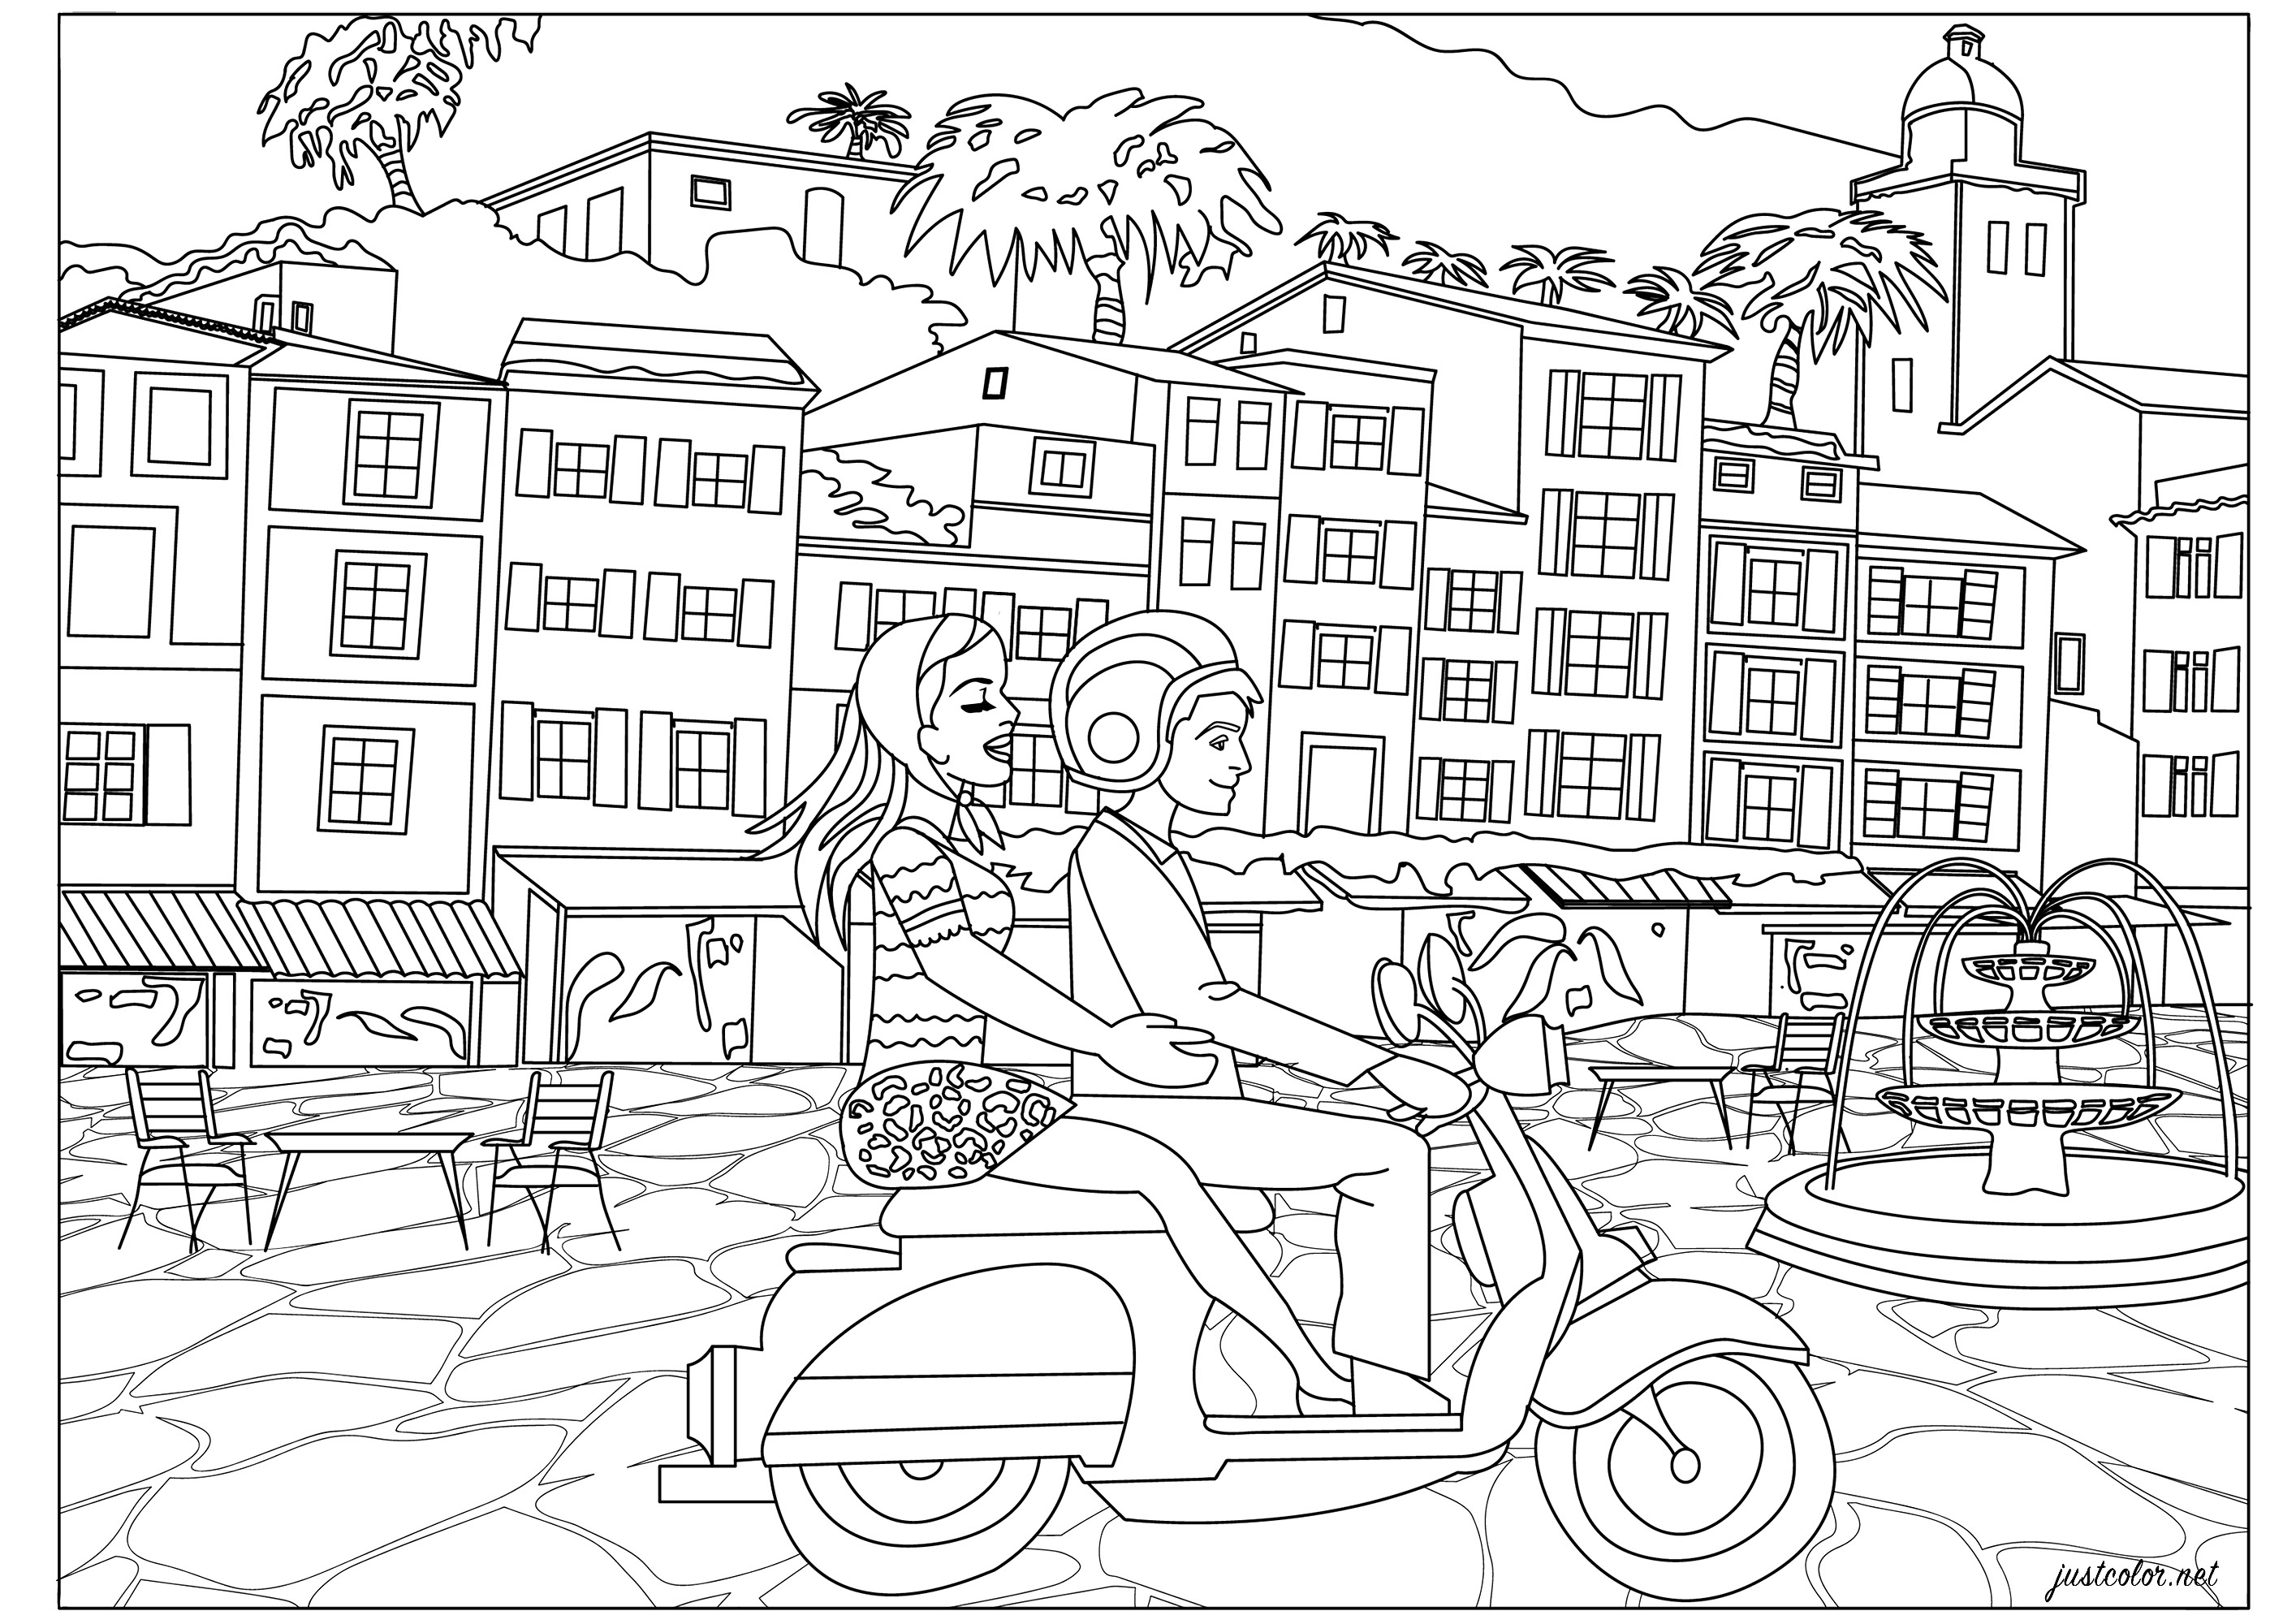 Vacances à l'italienne pour ce jeune couple sur son scooter vespa.Balade sur la côte avec la traversée de jolis villages... Coloriez ces typiques maisons italiennes, la fontaine sur la place, le scooter et recréez l'ambiance 'dolce vita' !